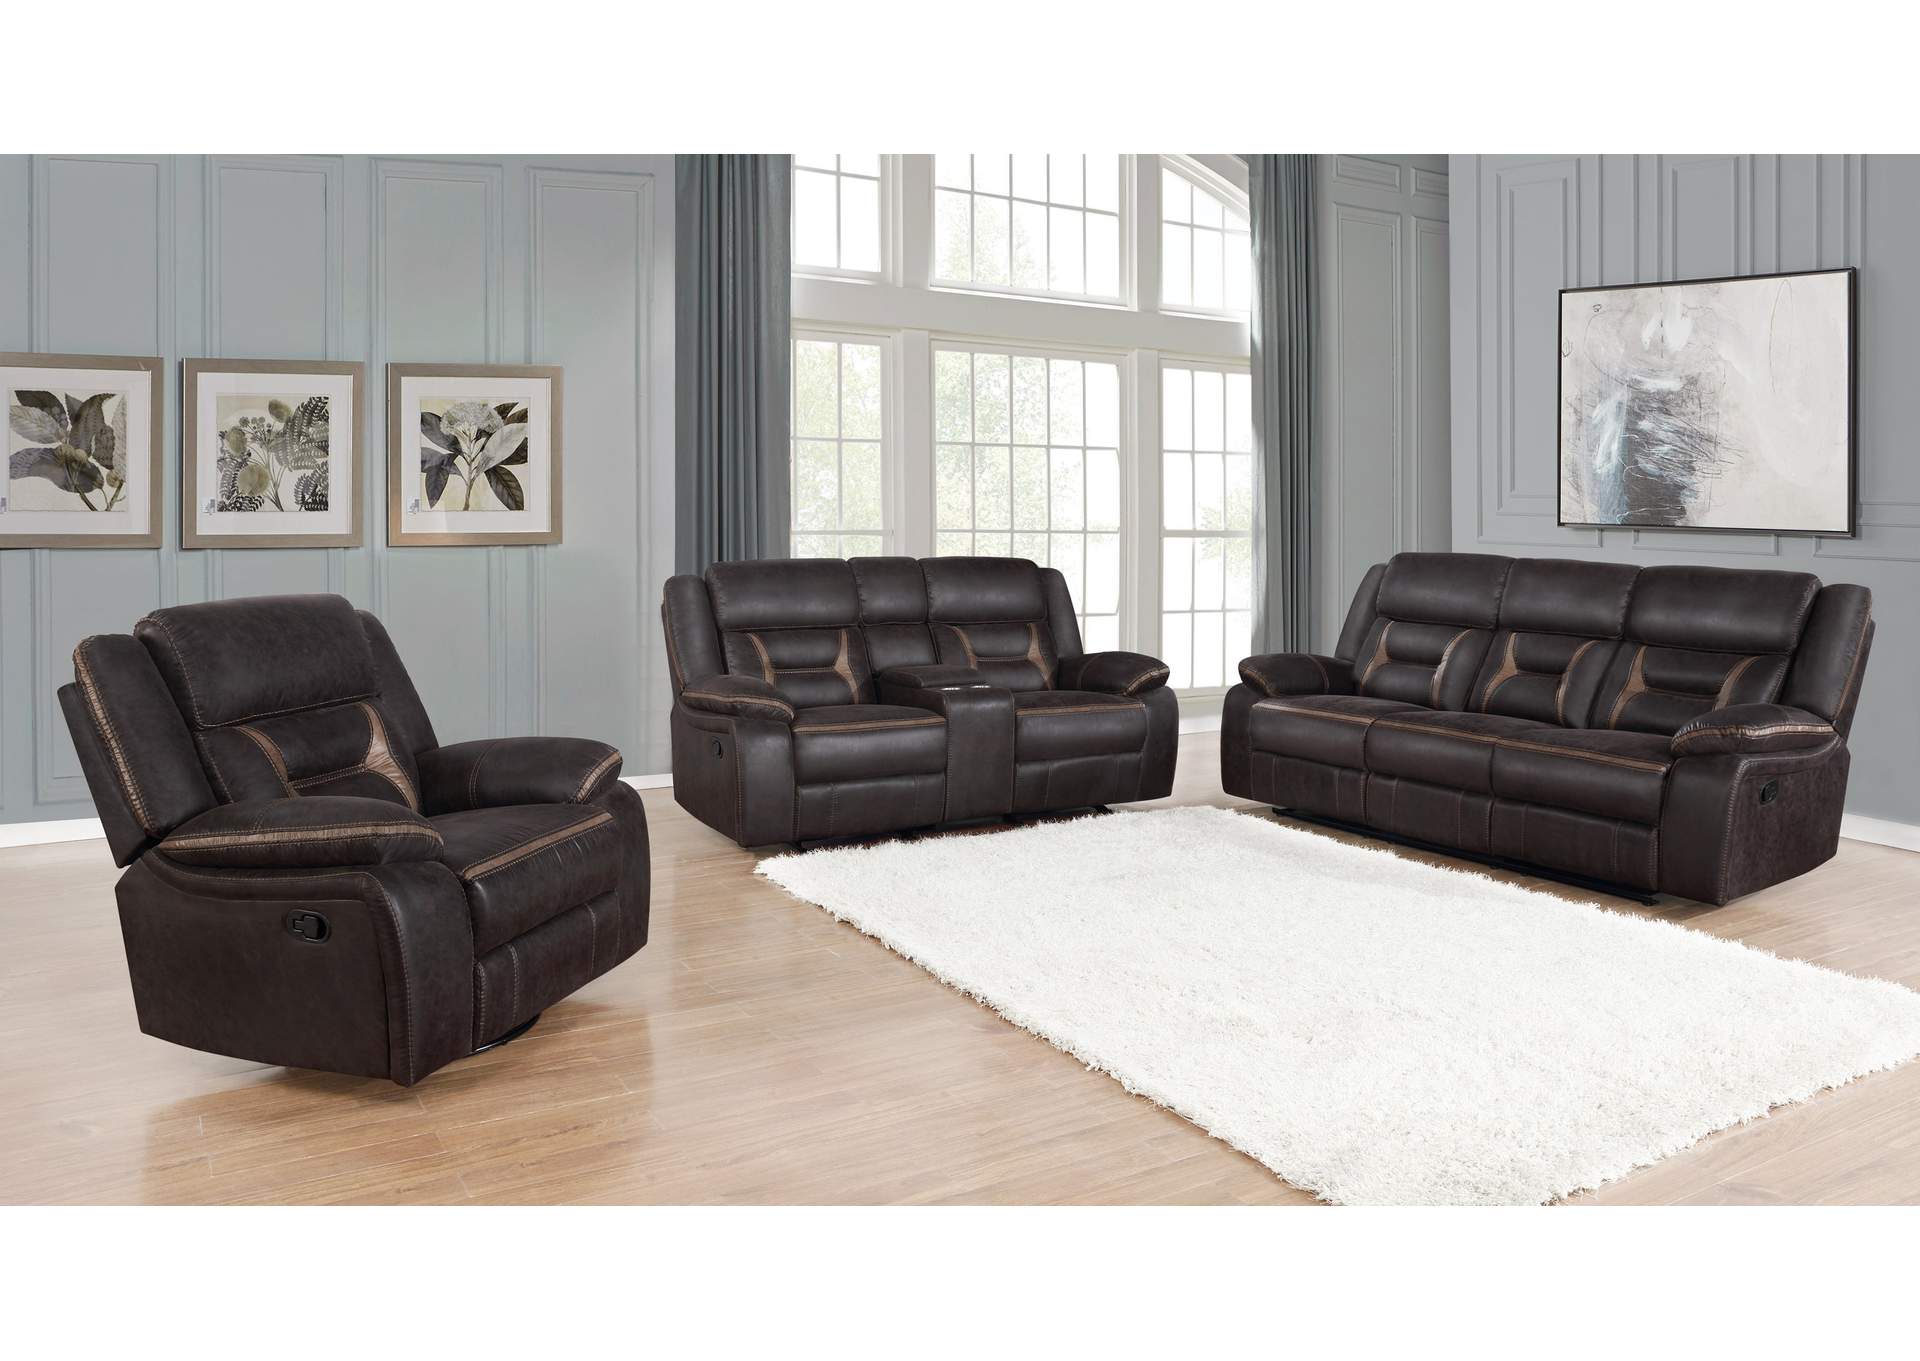 Greer Upholstered Tufted Living Room Set,Coaster Furniture